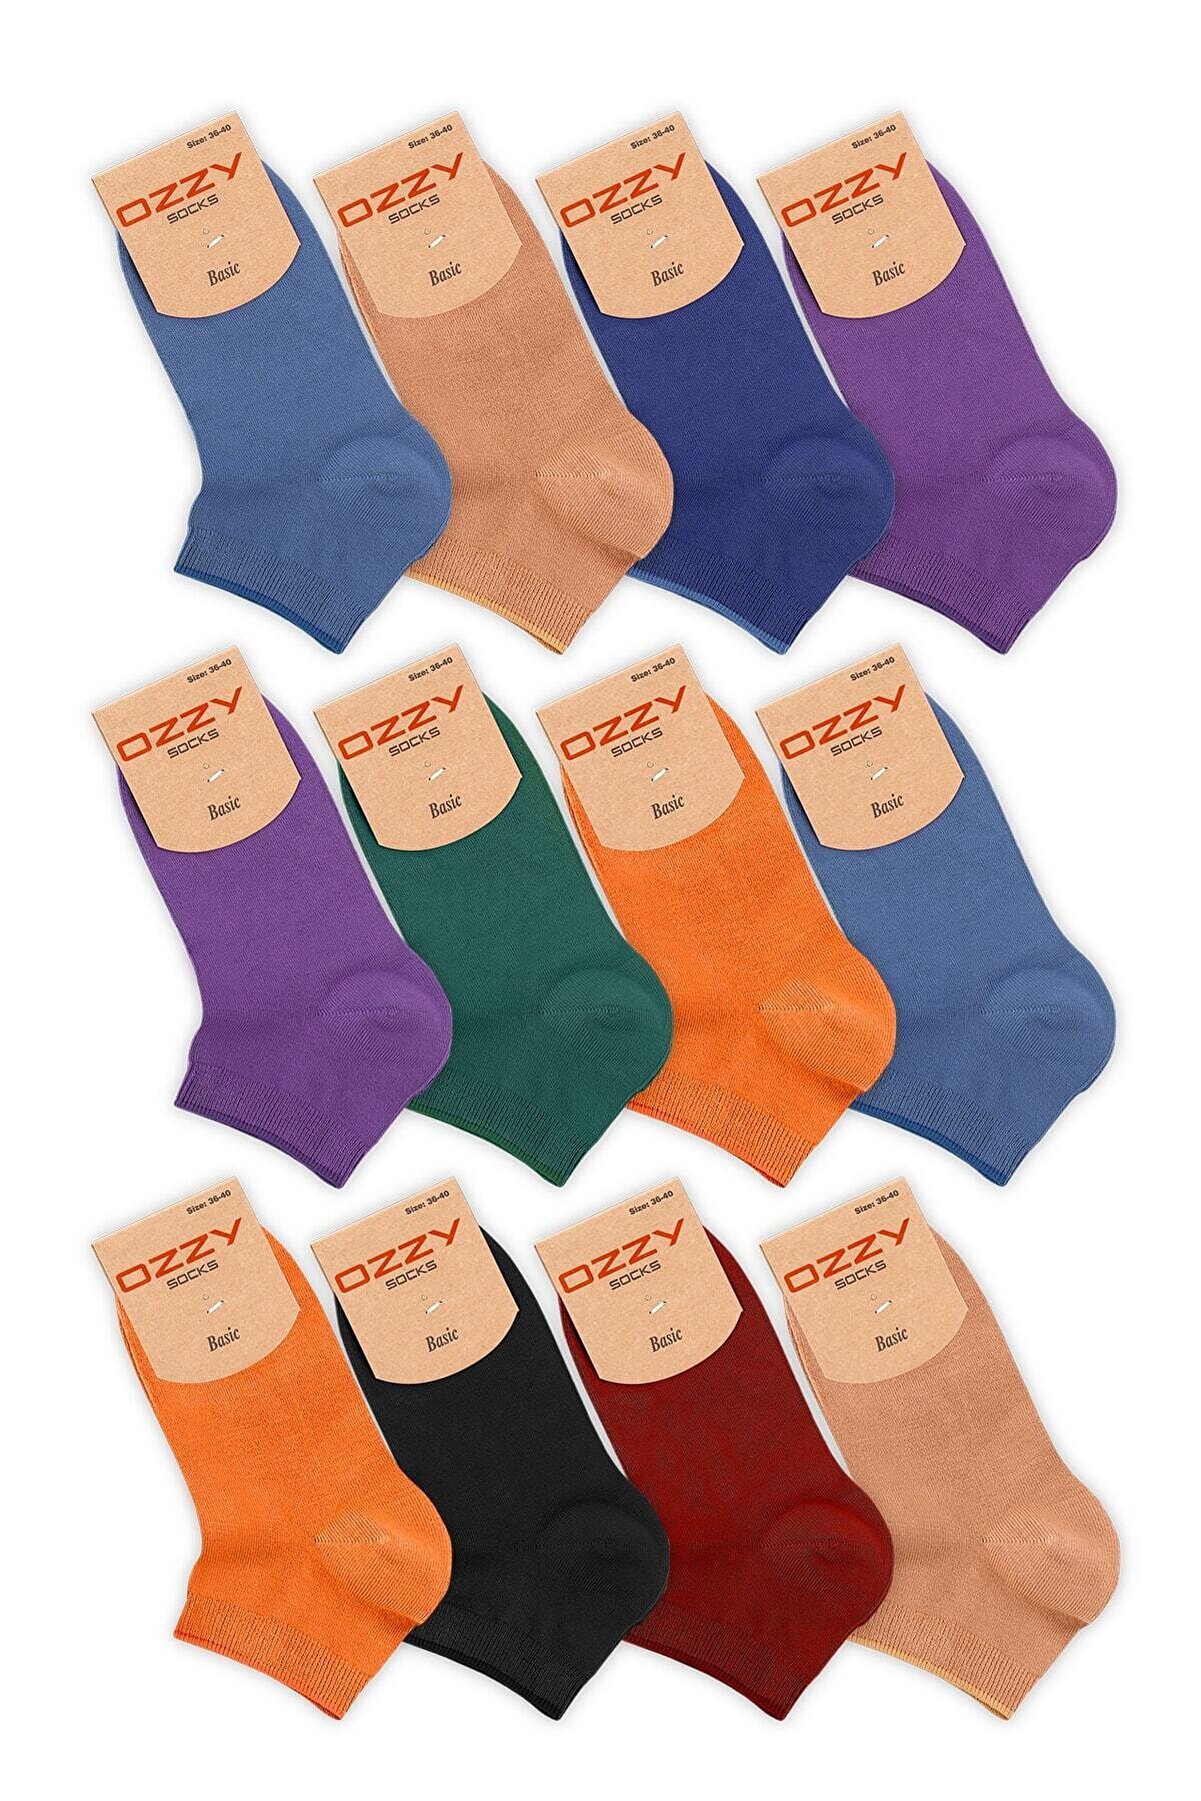 Ozzy Socks Kadın Bambu  Dikişsiz Patik Çorap 12 Çift